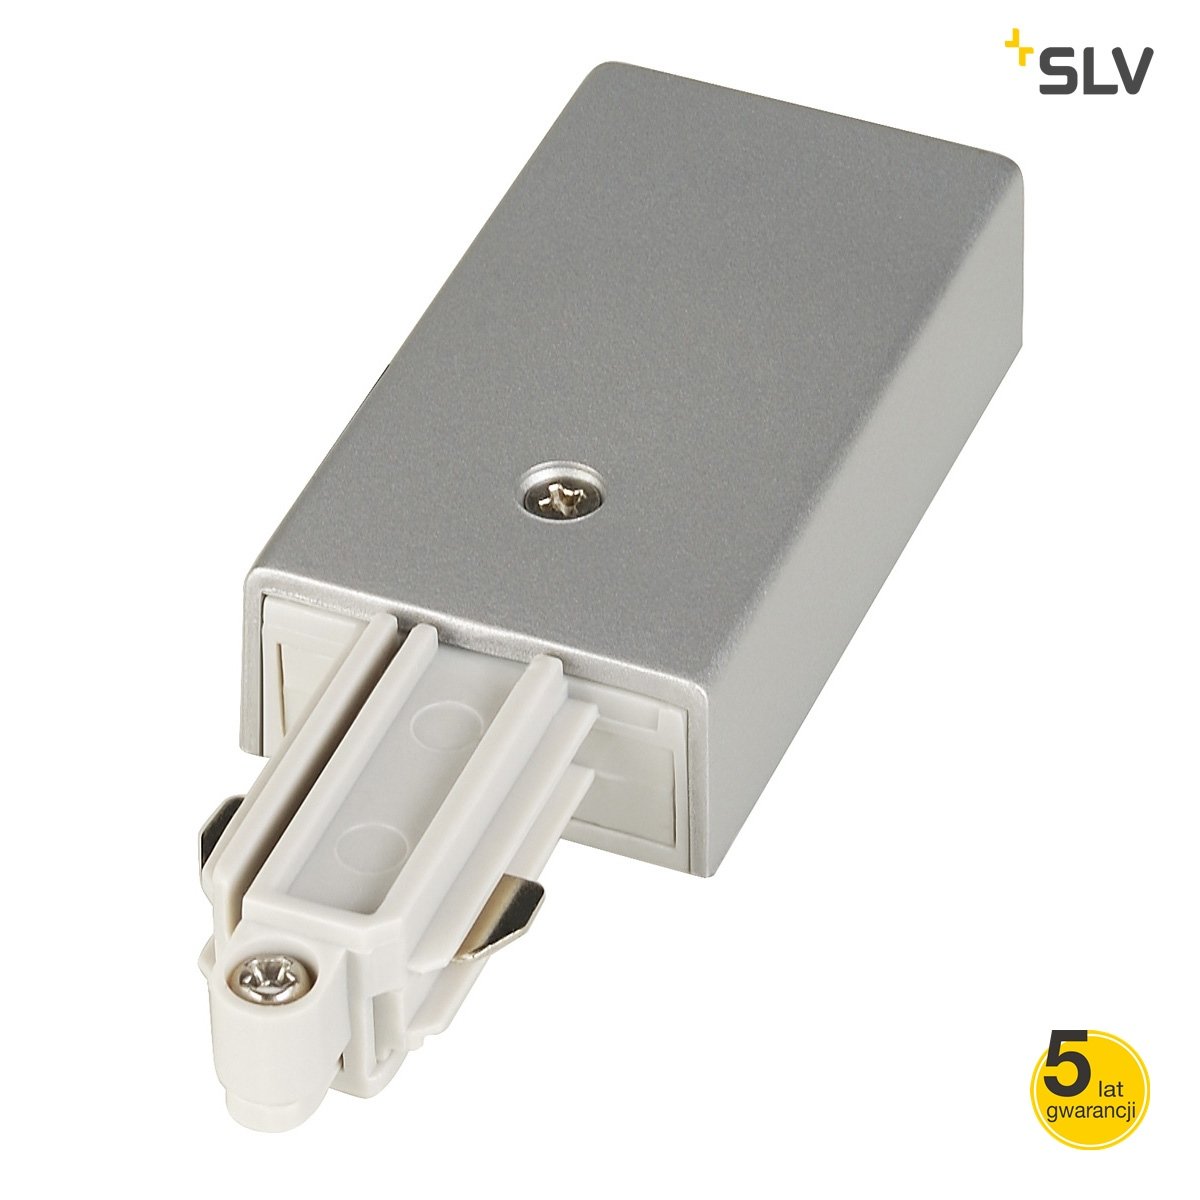 SLV Konektor do szyny jednofazowej wysokiego napięcia 143032